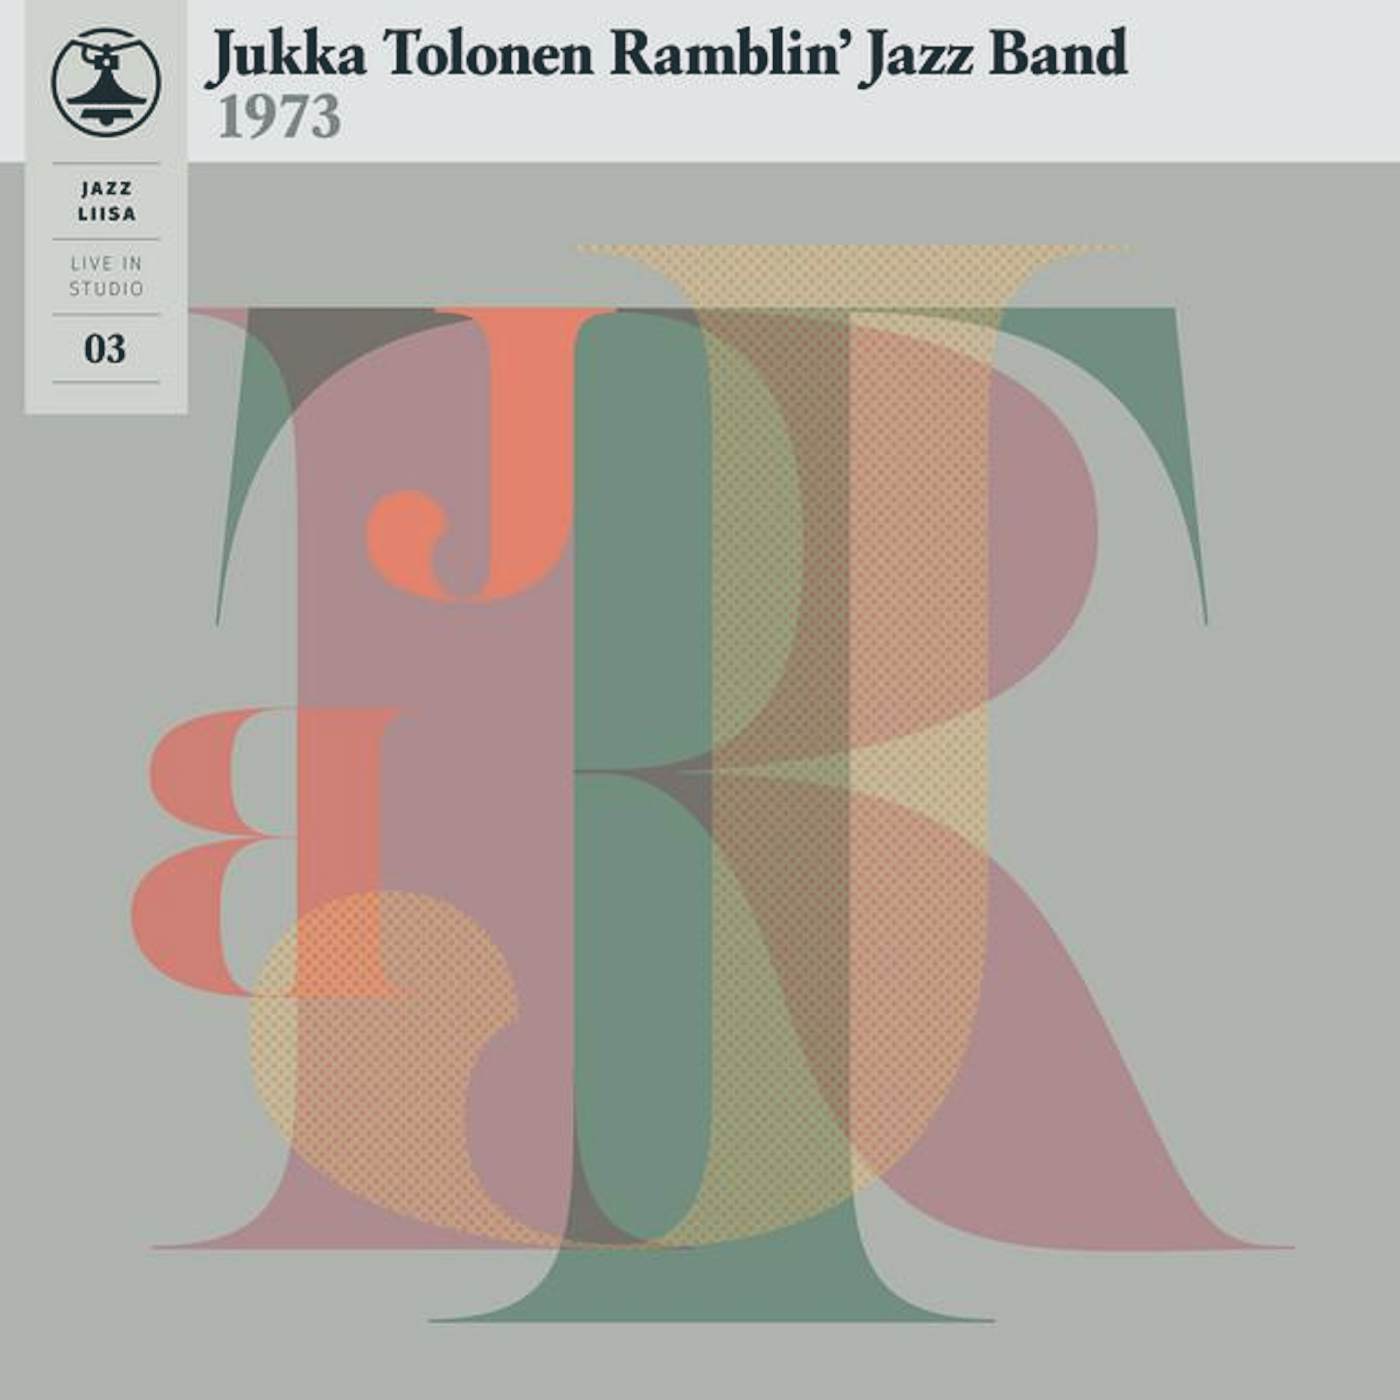 Jukka Tolonen Ramblin' Jazz Band